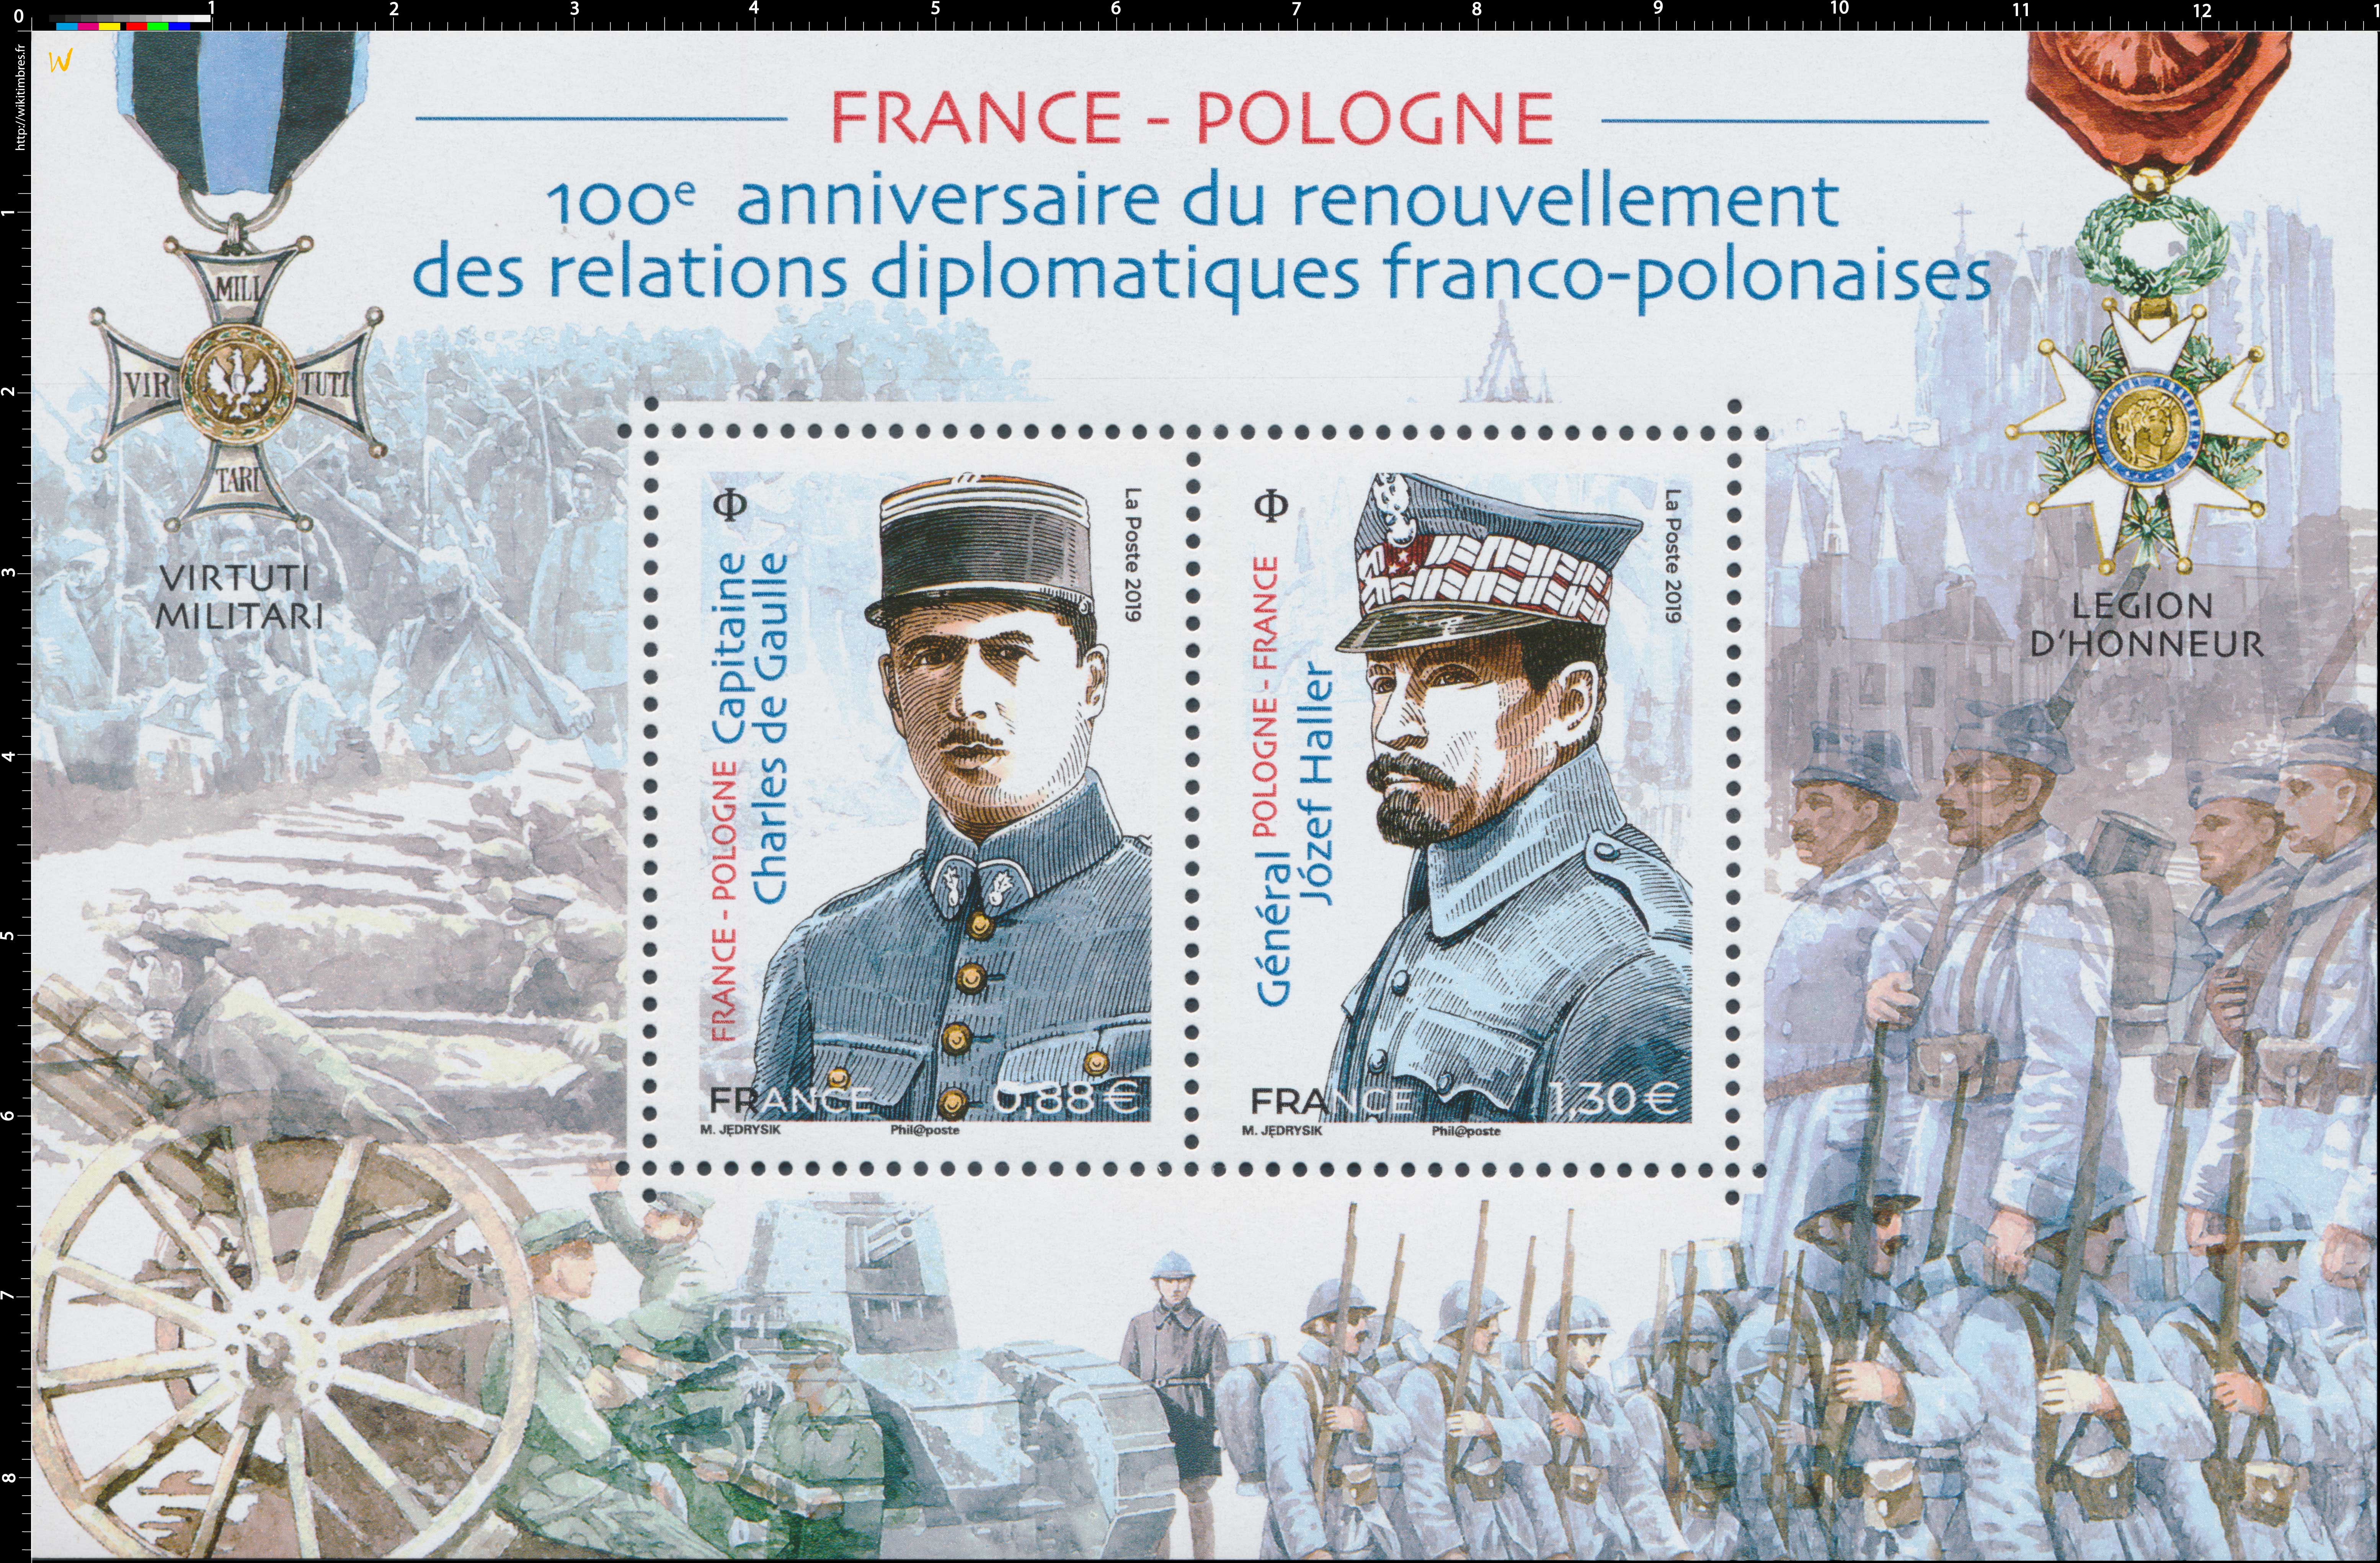 2019 FRANCE- POLOGNE 100e anniversaire du renouvellement des relations diplomatiques franco-polonaises